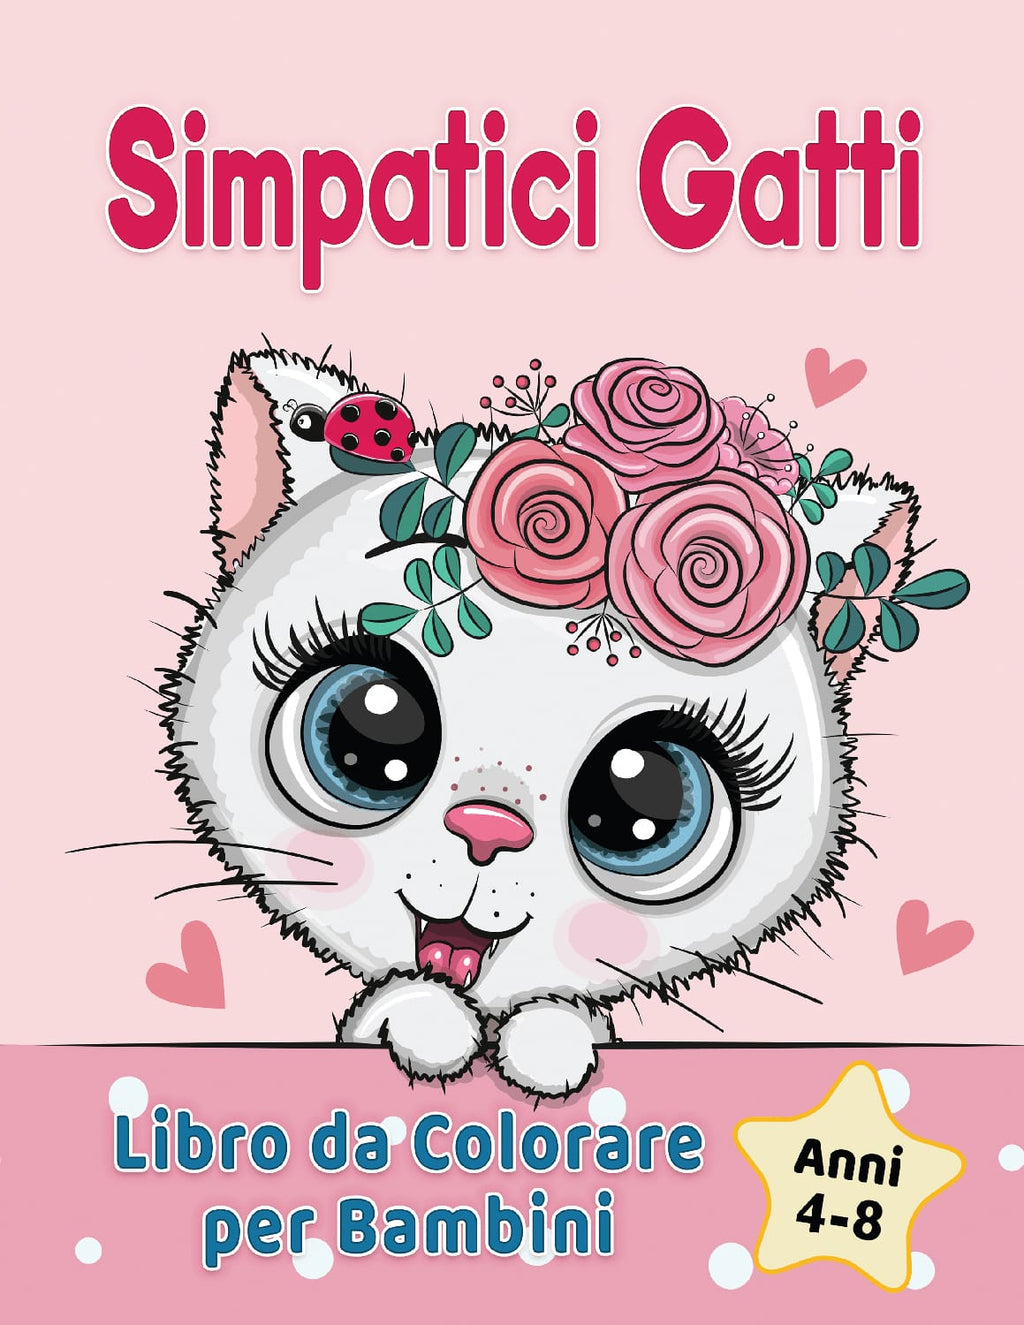 Simpatici Gatti Libro da Colorare per Bambini